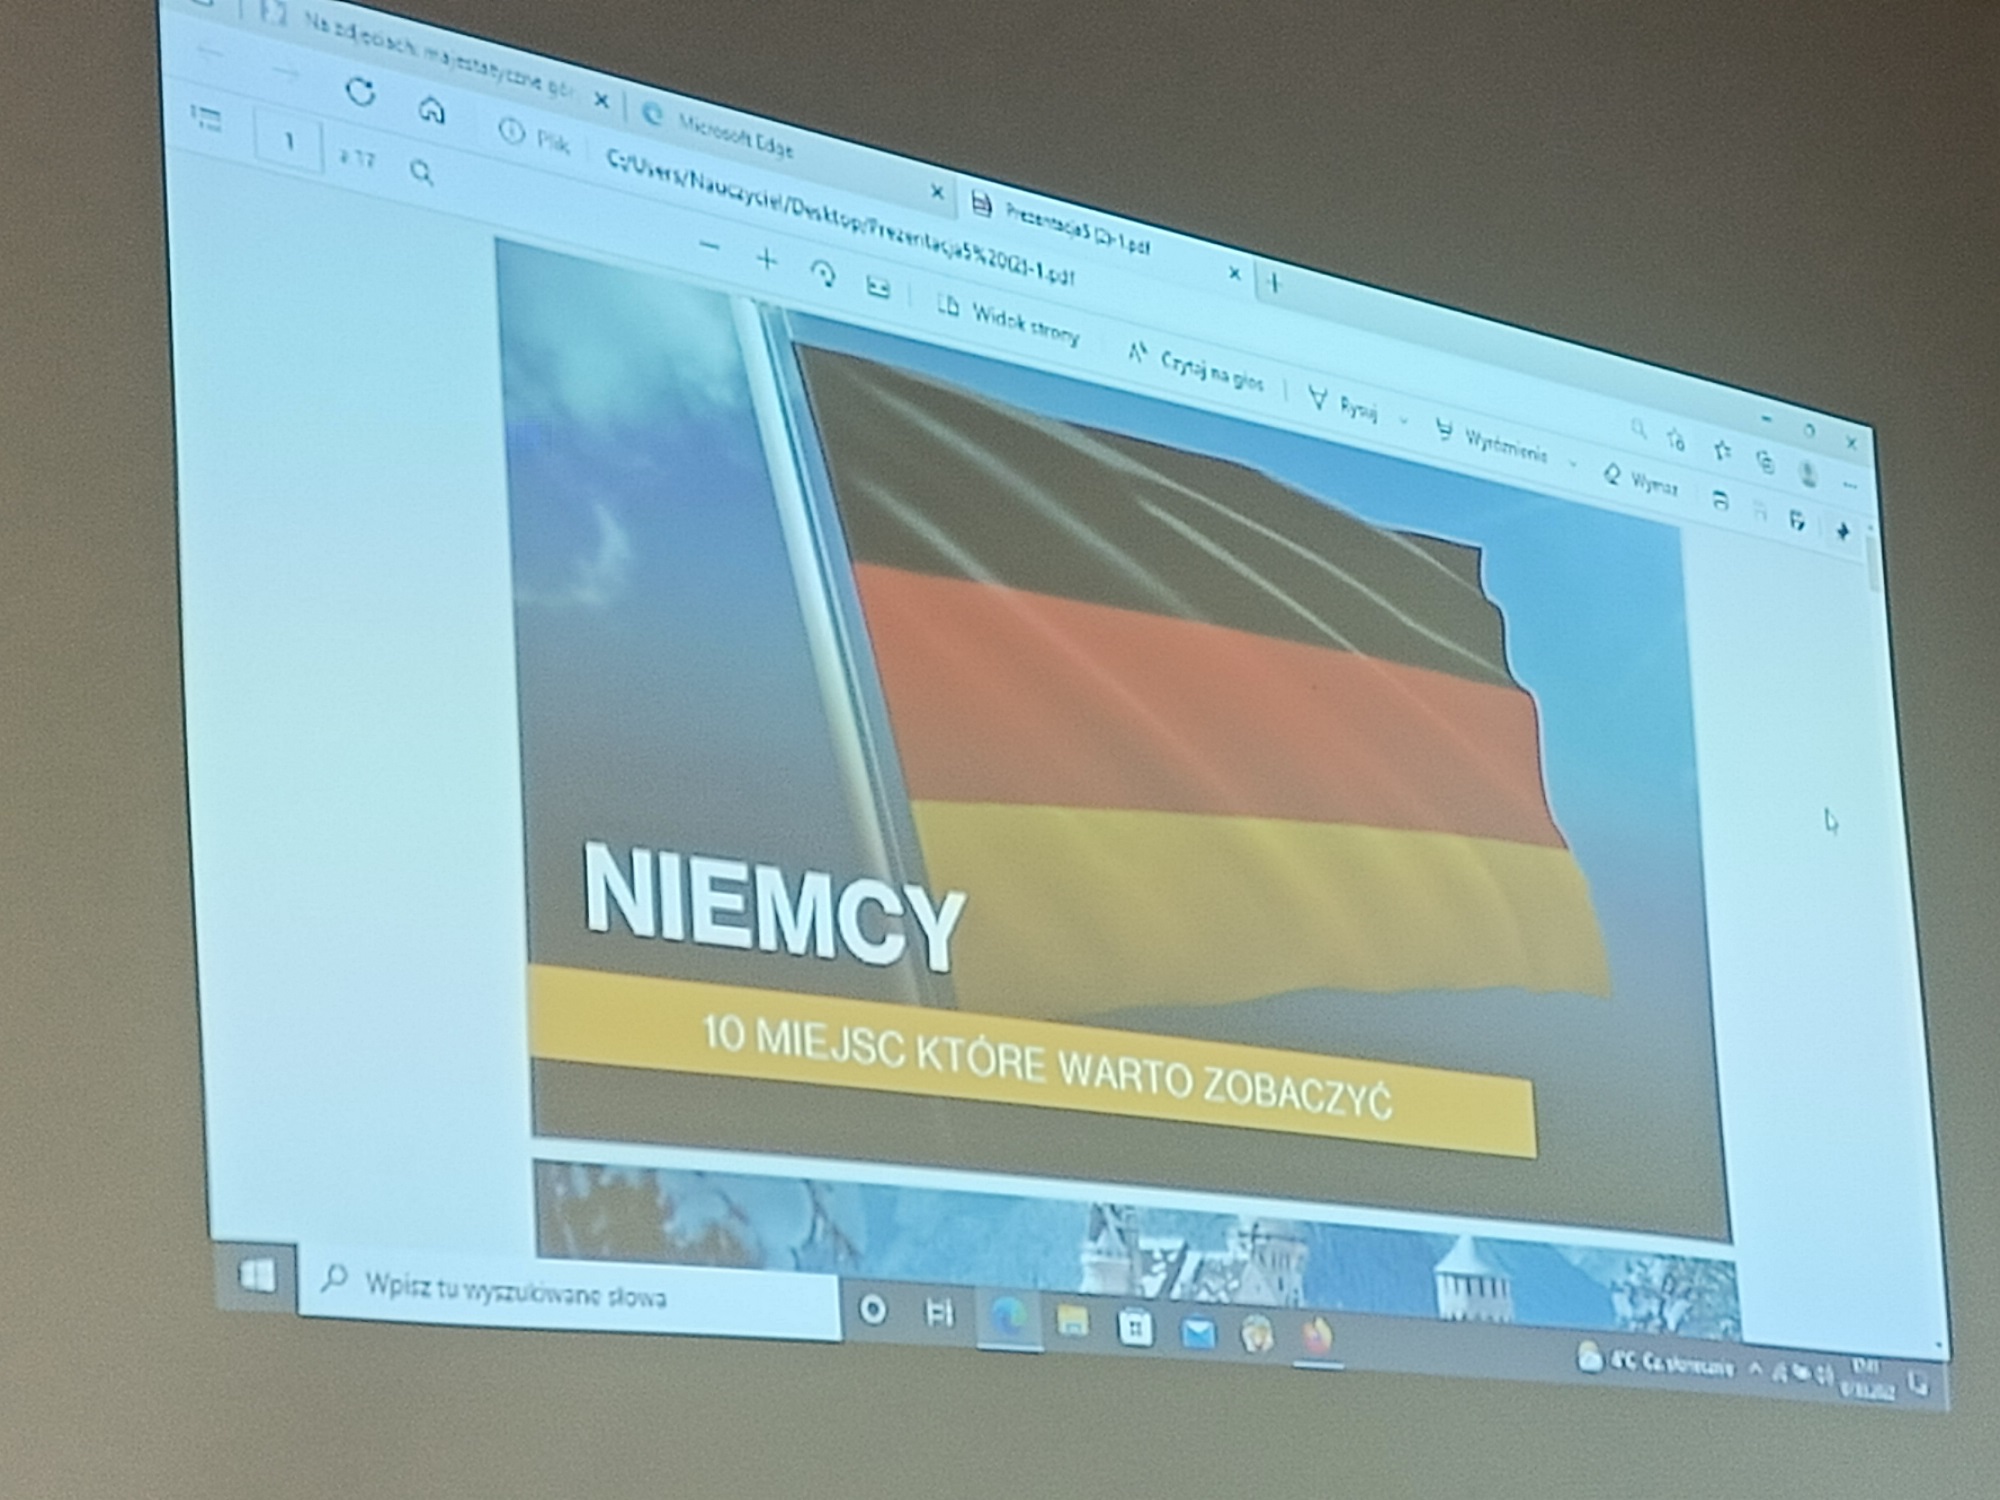 Obraz wyświetlony z rzutnika: flaga Niemiec